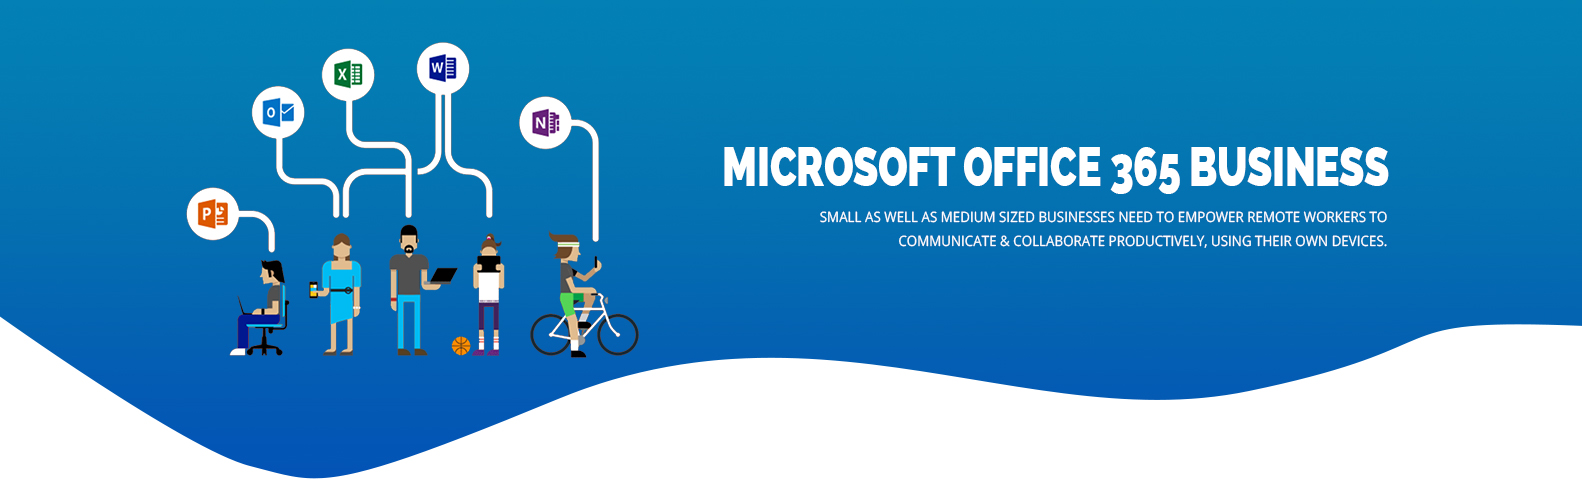 KHAI PHÁ TIỀM NĂNG MICROSOFT 365 CHO DOANH NGHIỆP KINH DOANH BÁN LẺ - Microsoft  Office 365